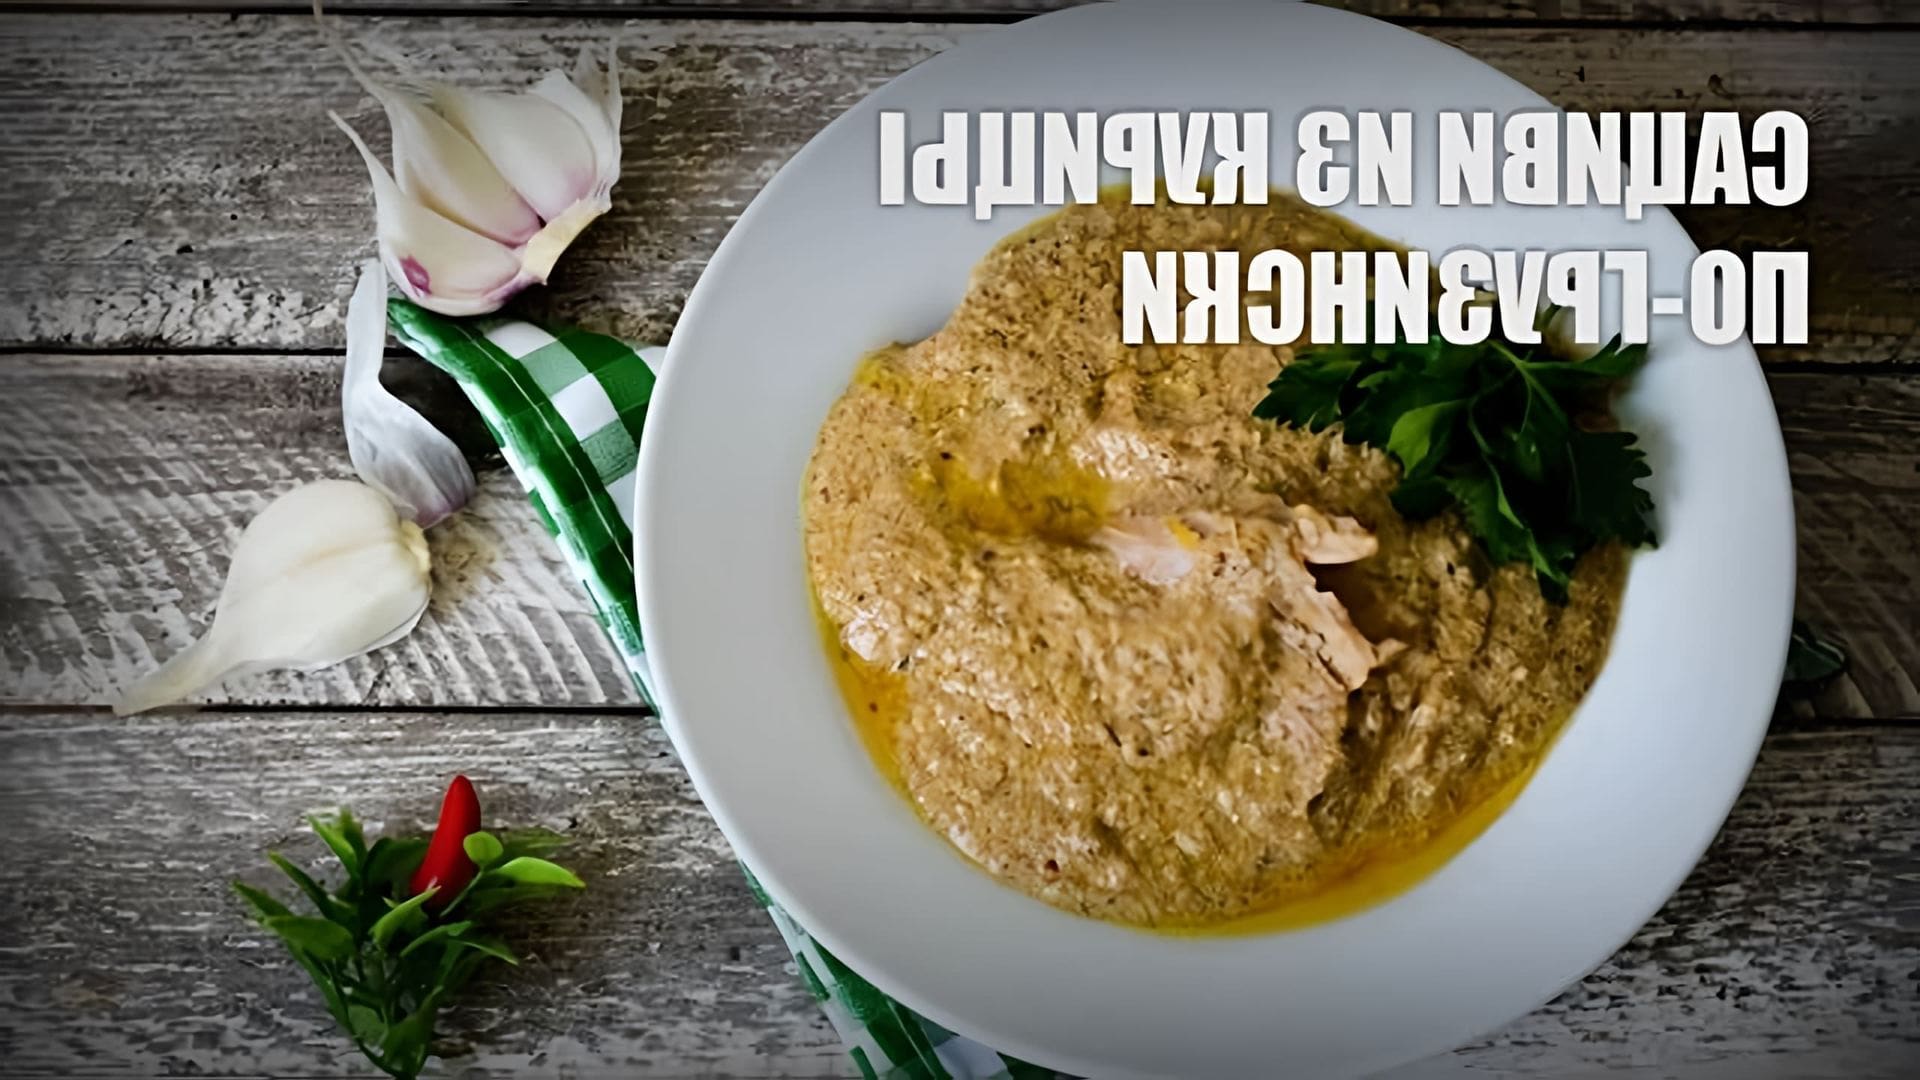 В этом видео представлен рецепт приготовления сациви из курицы по-грузински